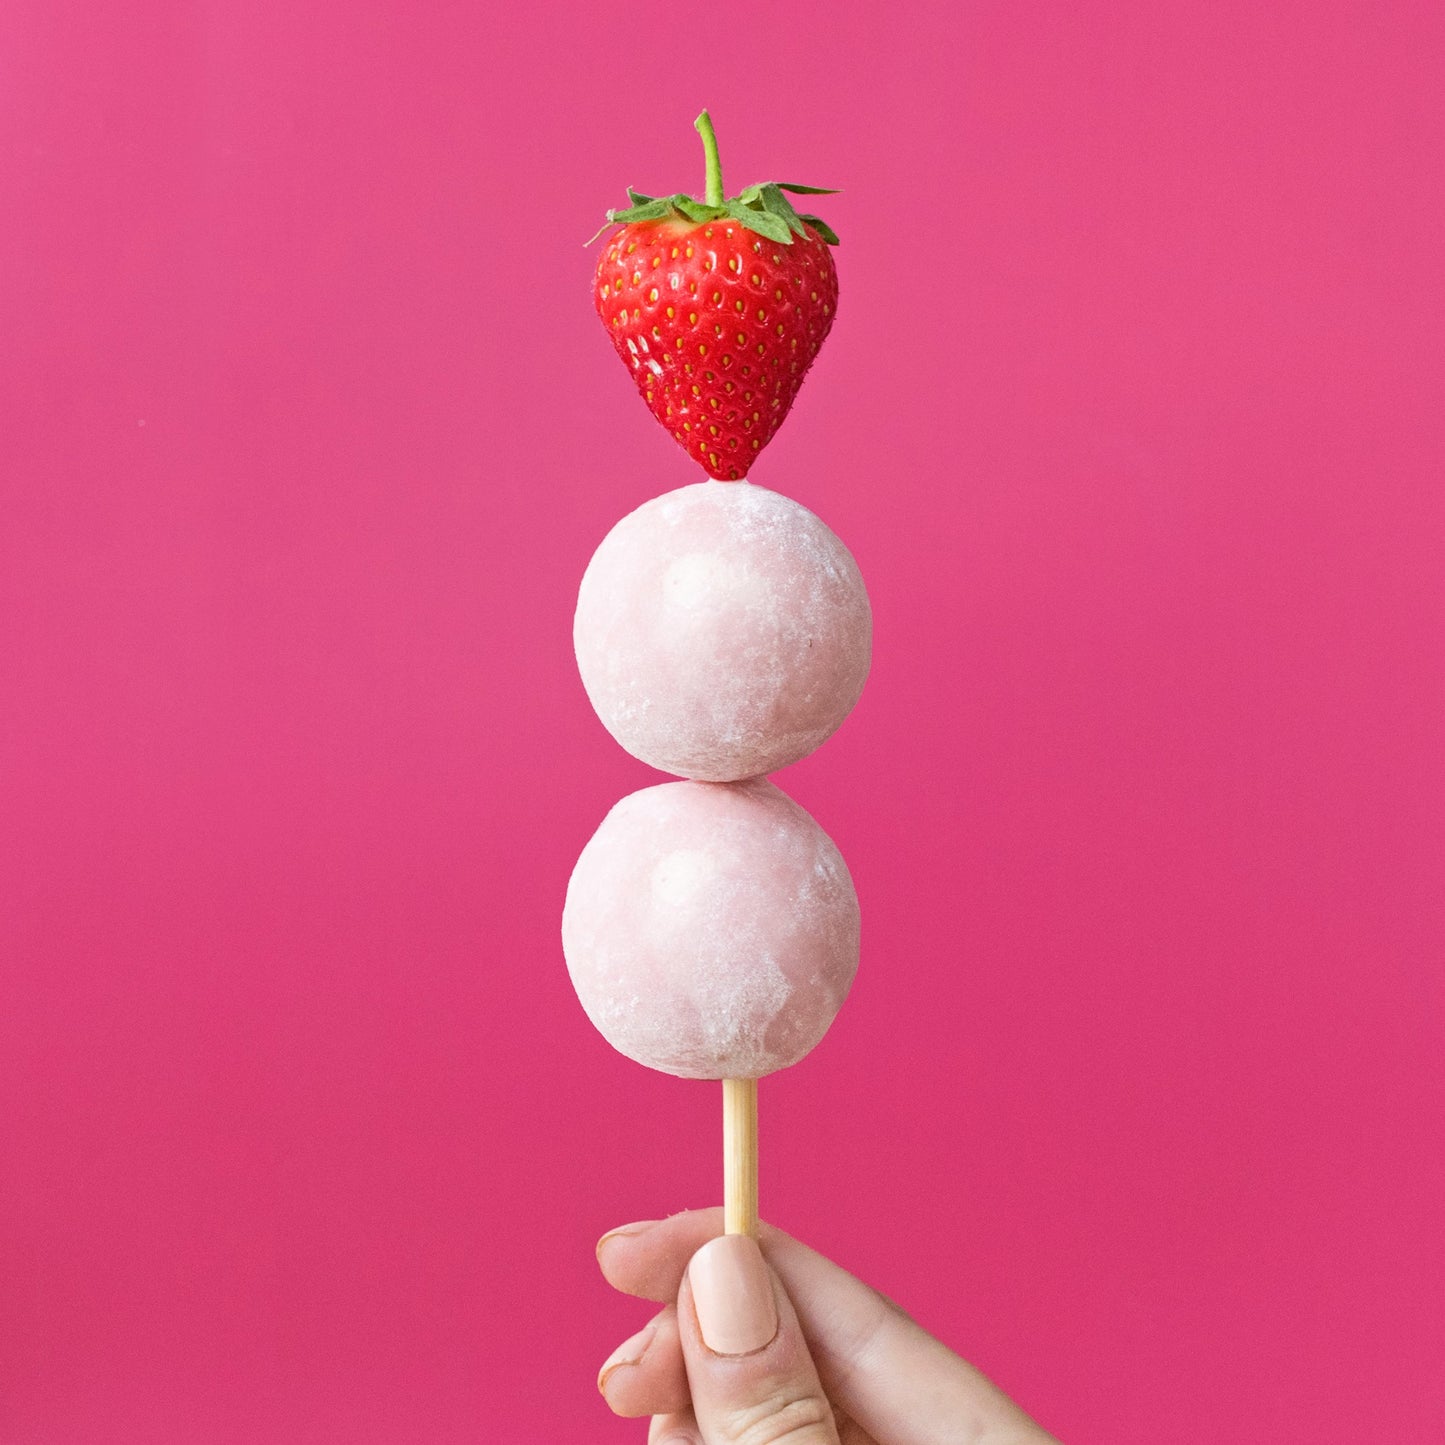 גלידת מוצ׳י קרם תותים - Little Moons - פריקפוא